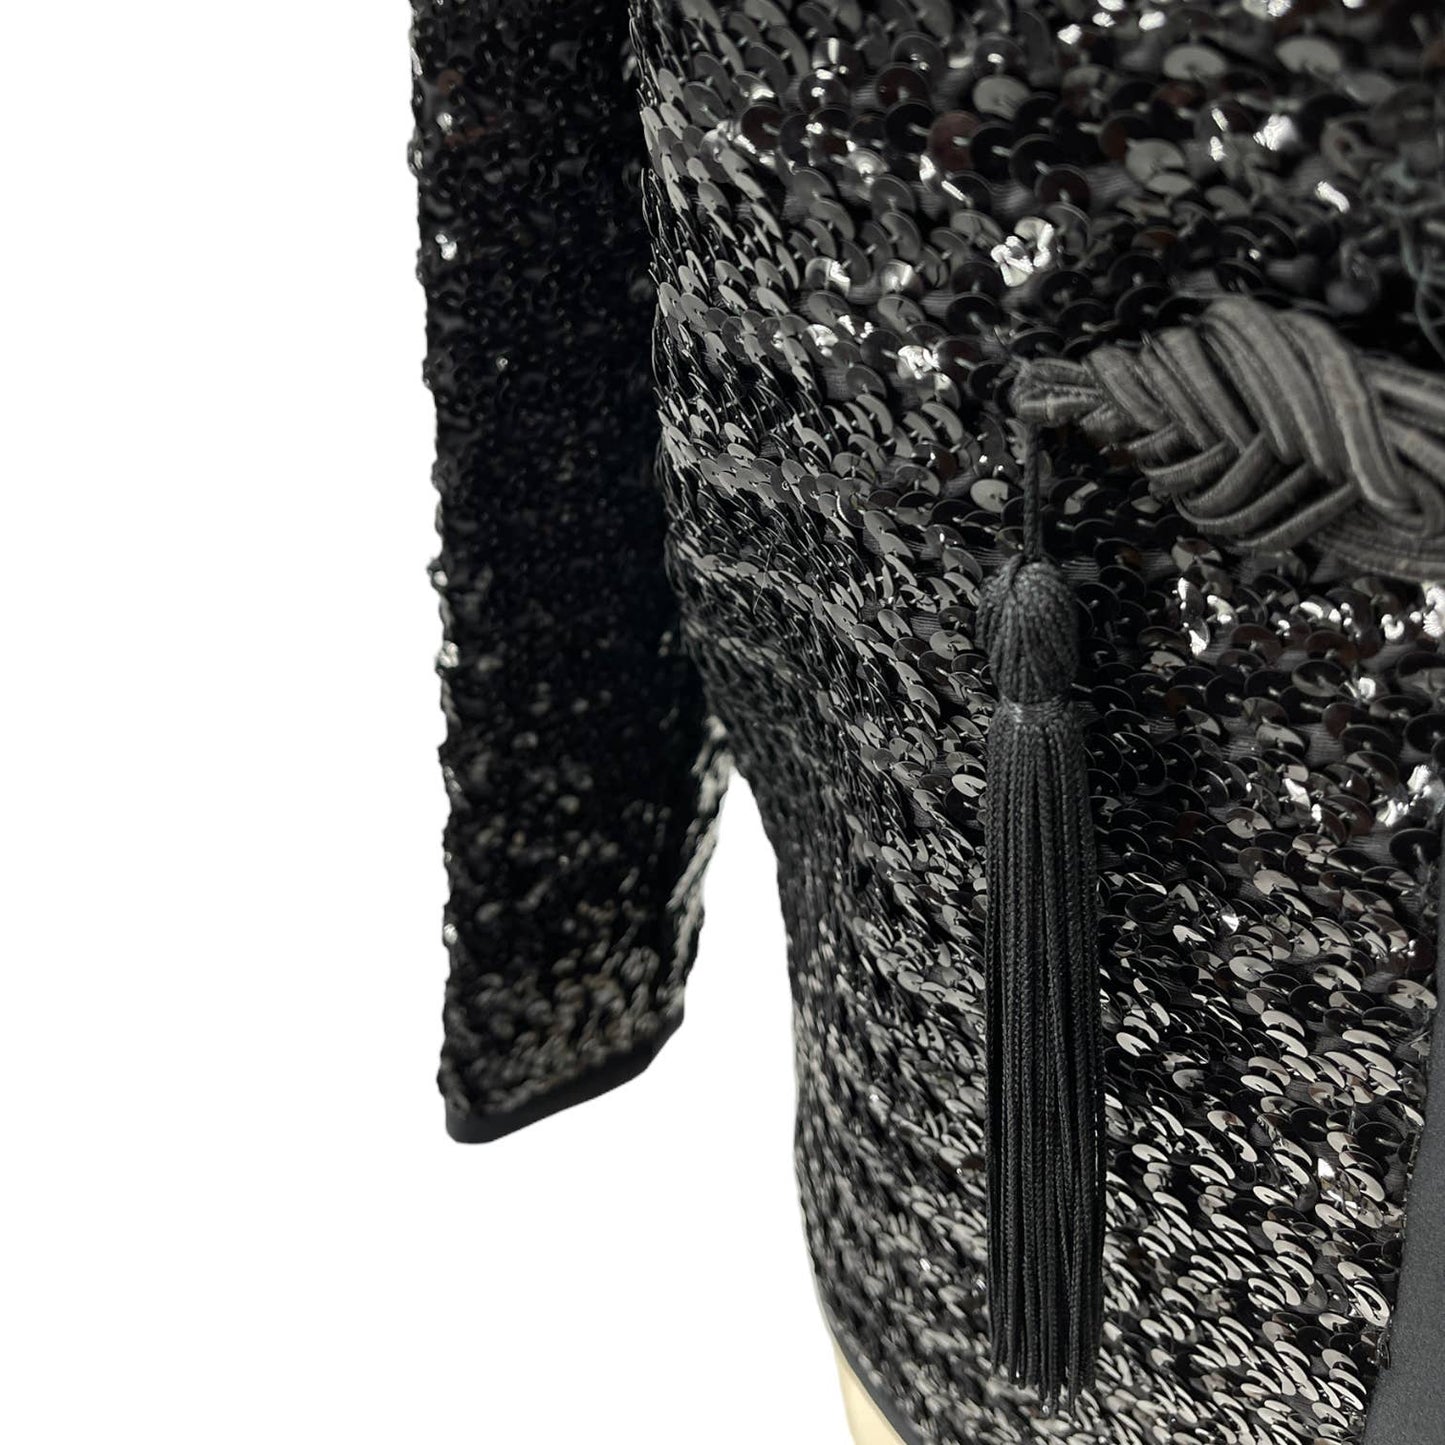 Vintage 70s Black Sequin Jacket Tassel Detail Super Glam Henry Higgins Size M L